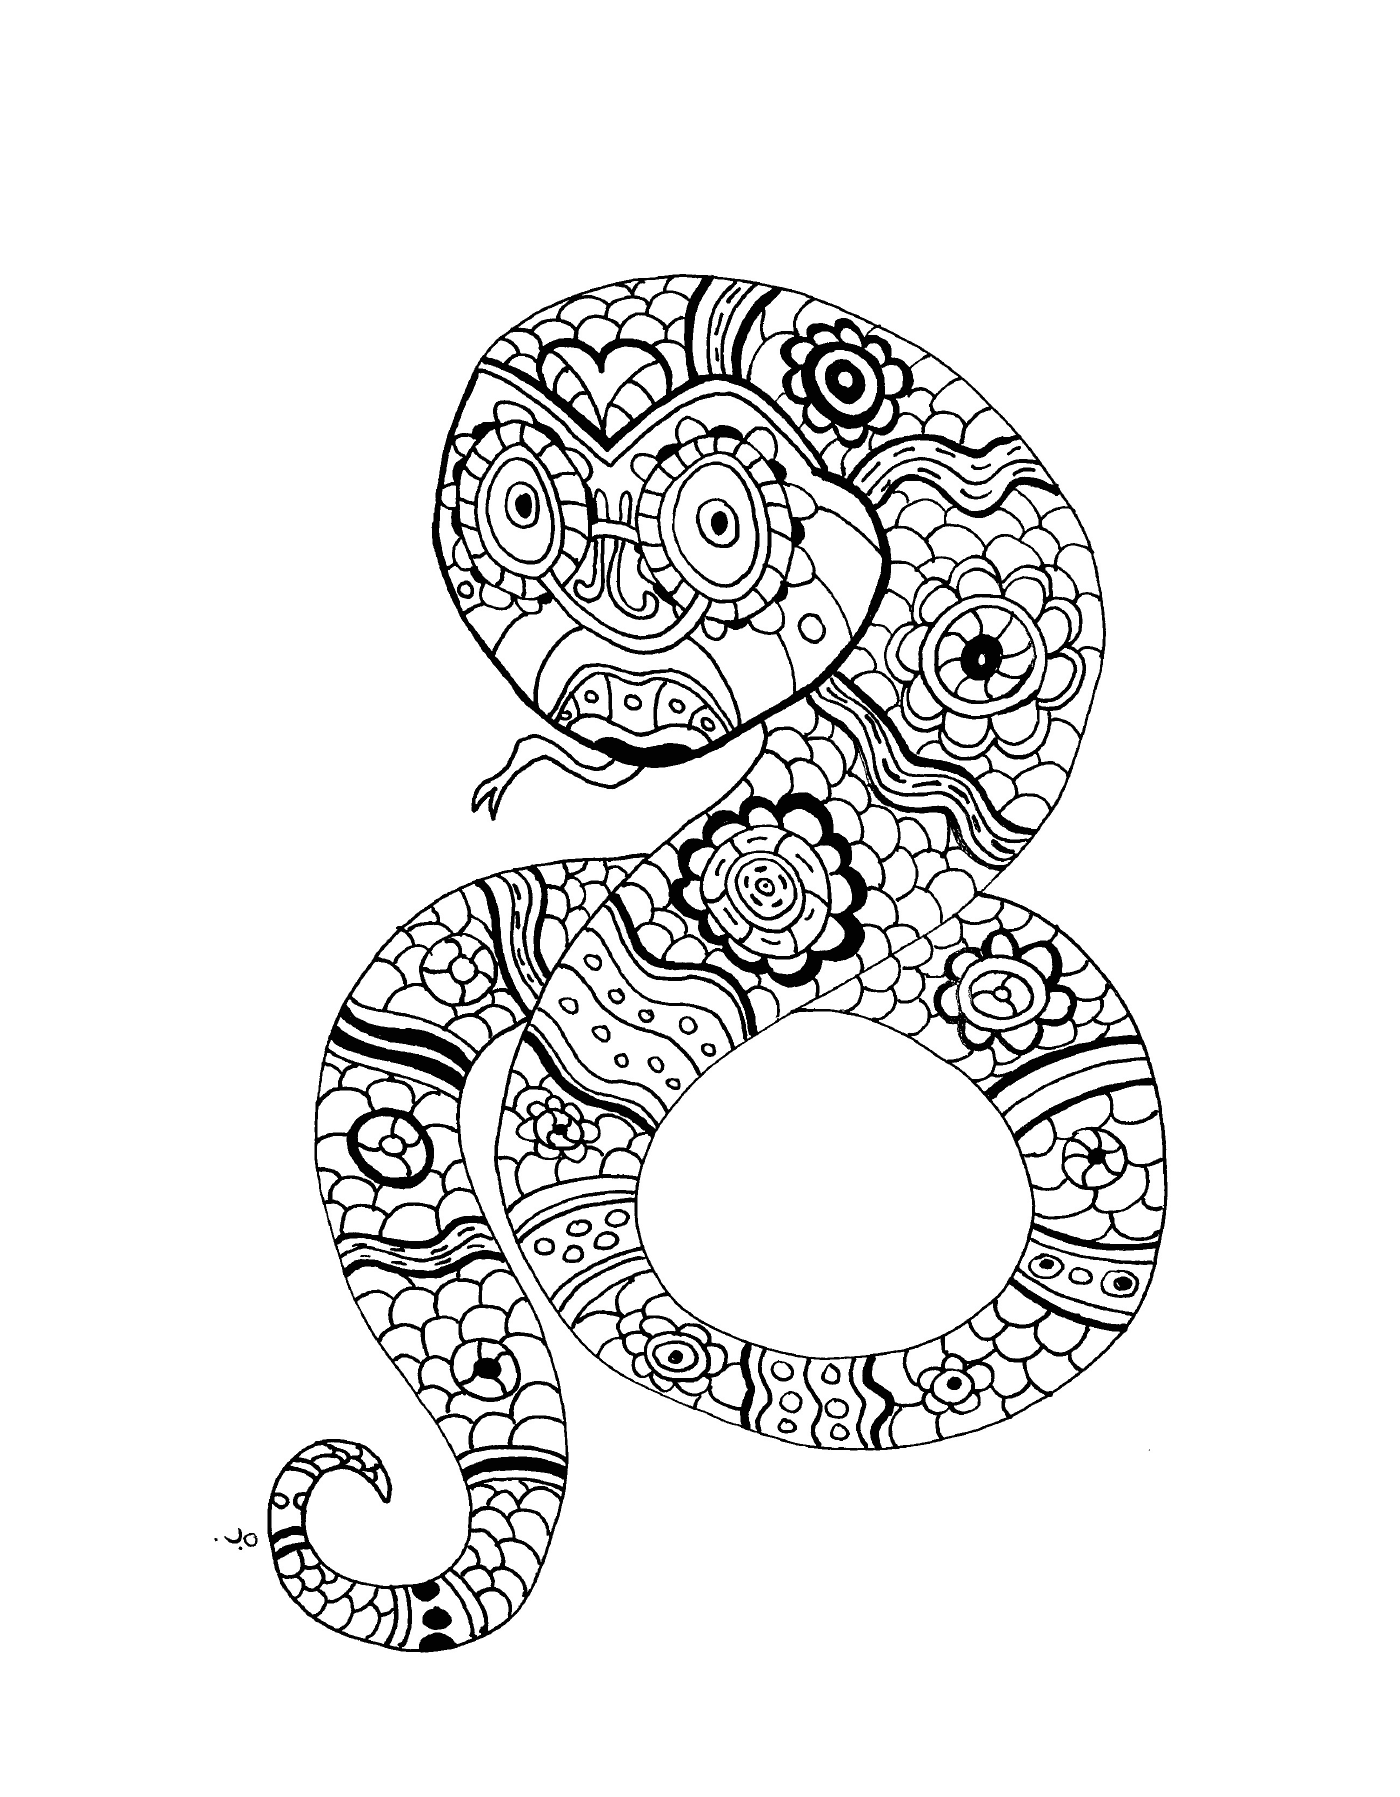  Una serpiente ornamental con un motivo floral 